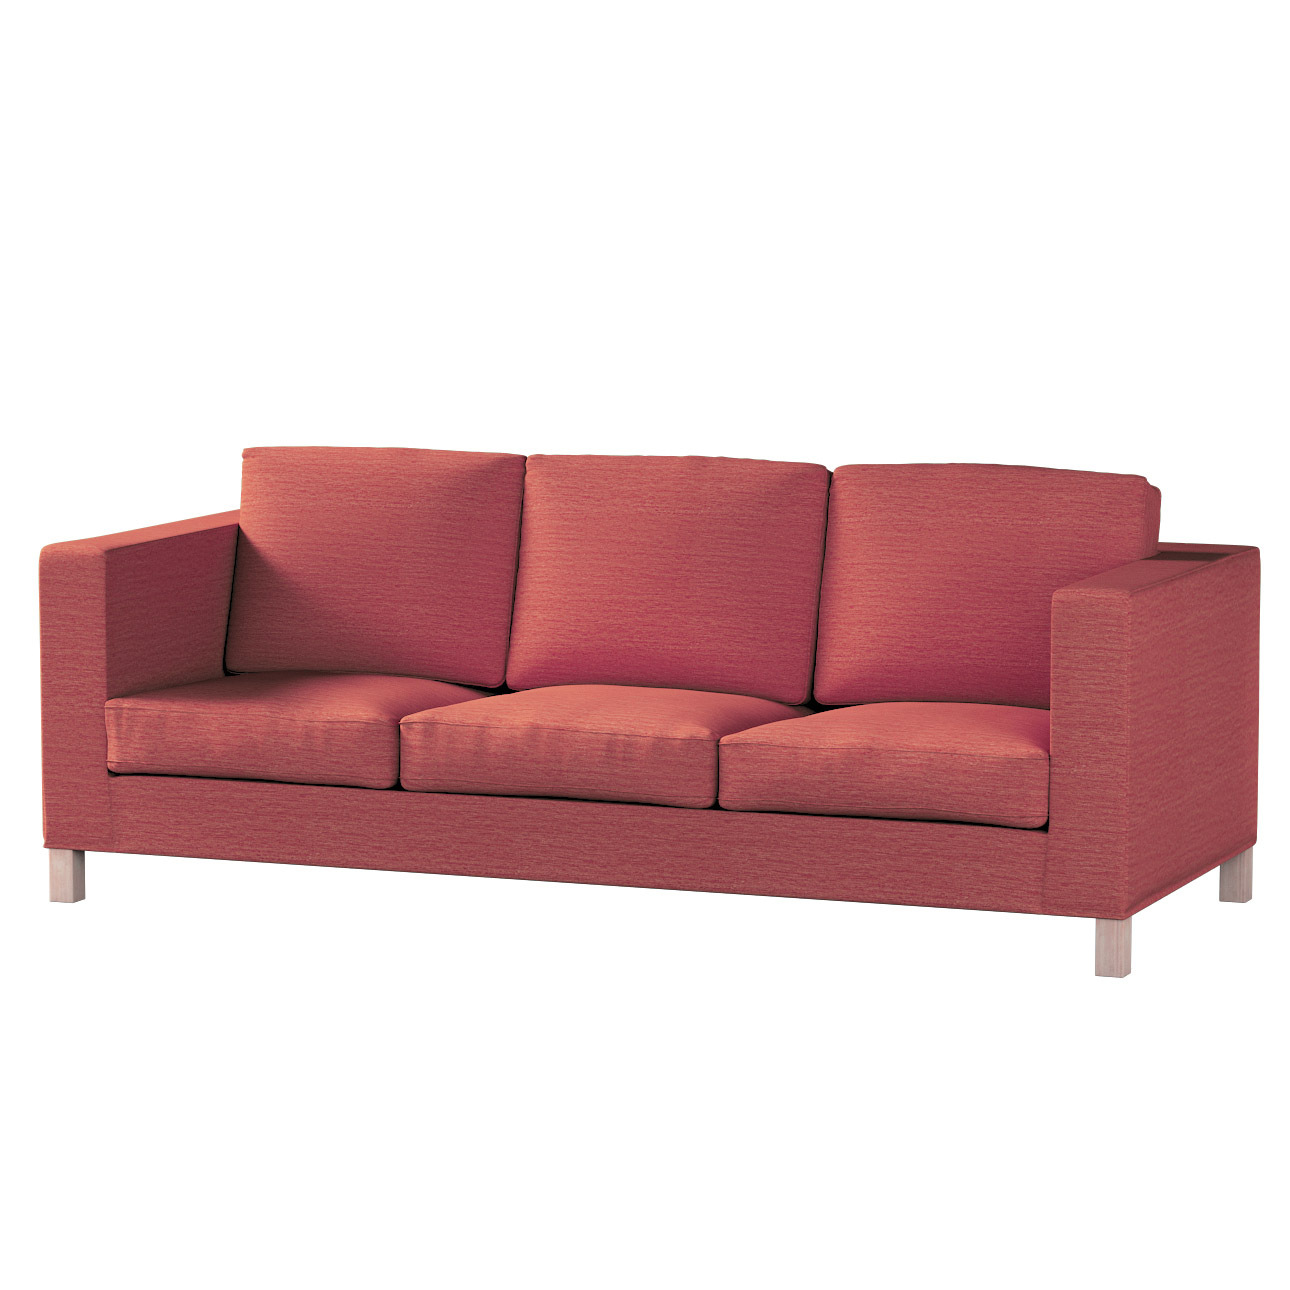 Bezug für Karlanda 3-Sitzer Sofa nicht ausklappbar, kurz, ziegelrot, Bezug günstig online kaufen